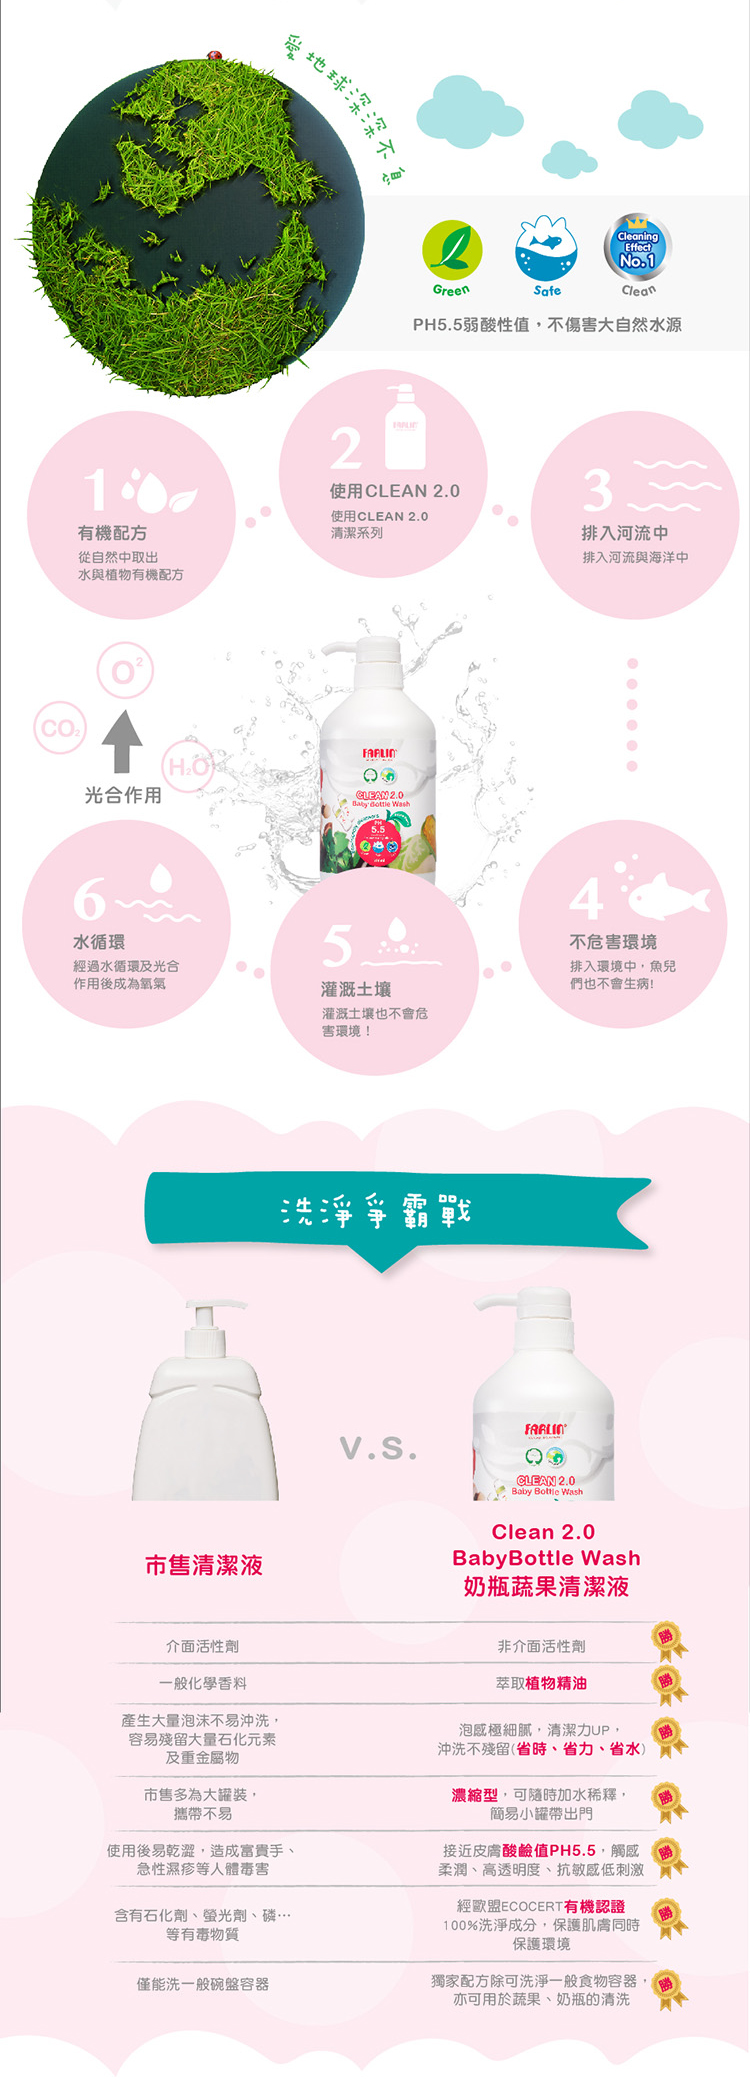 免運【FARLIN】蔬果玩具奶瓶清潔劑(超值8件組/共4400ml)